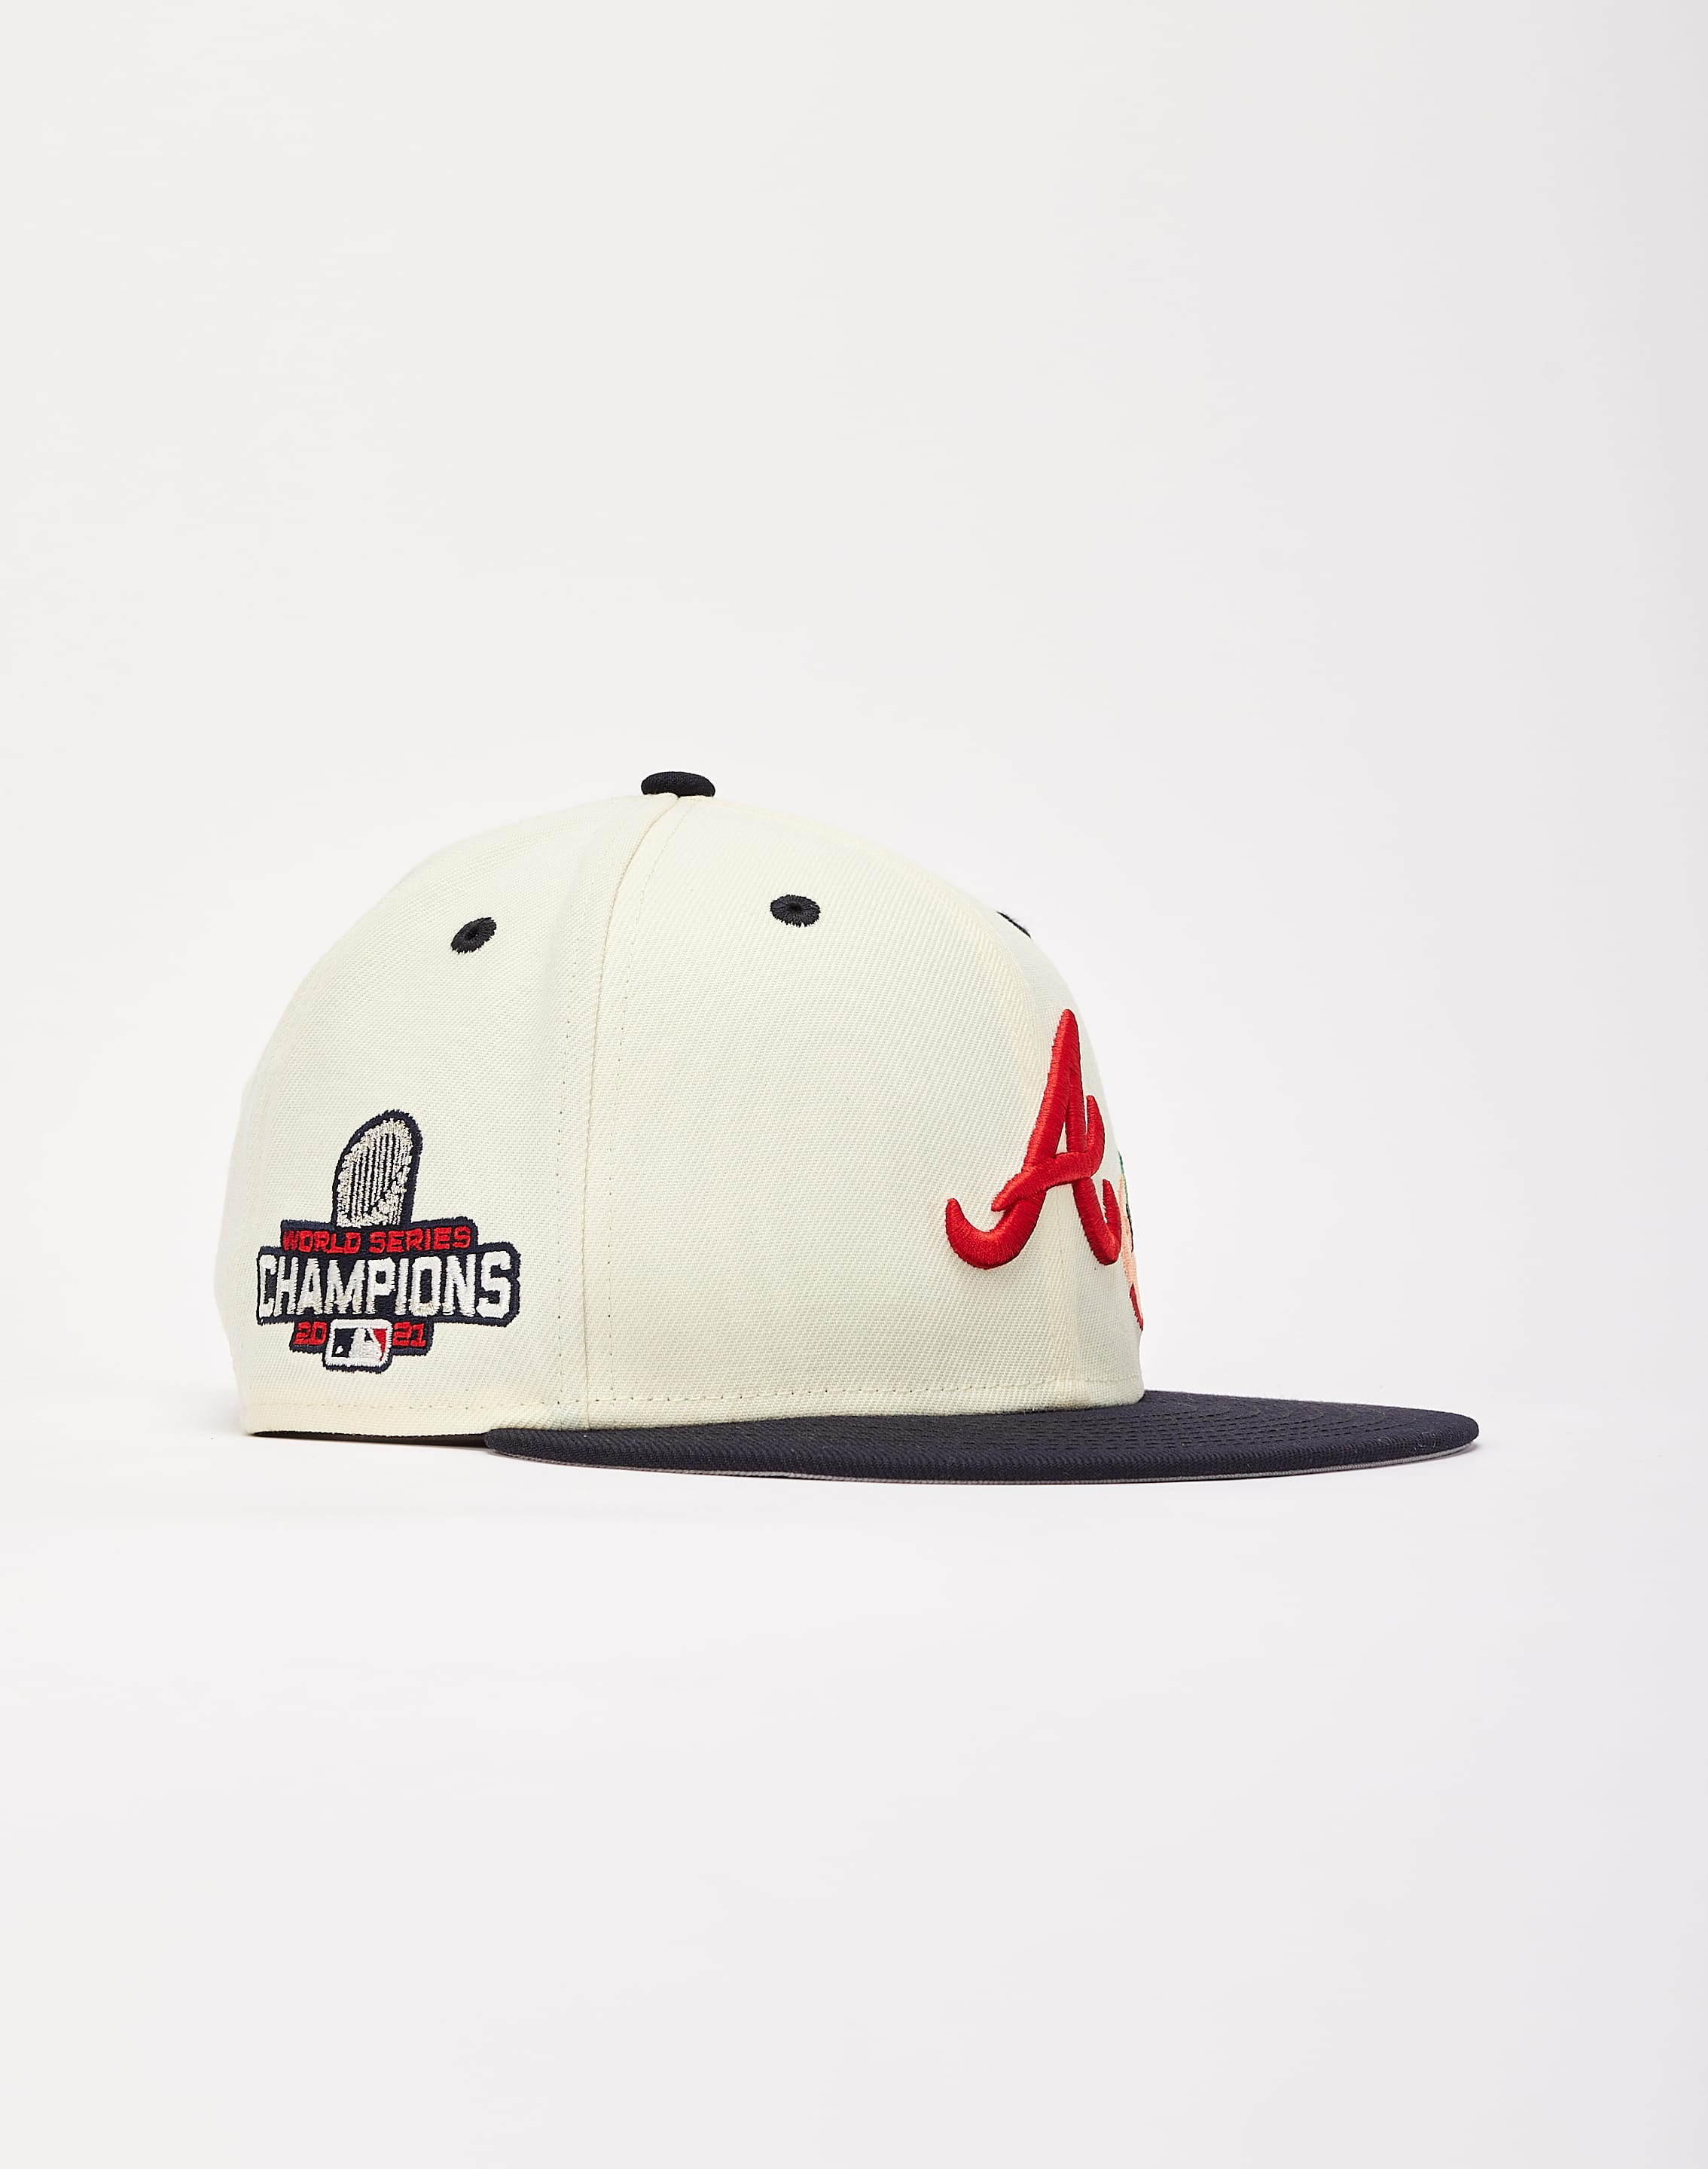 Men's Atlanta Braves New Era White Vintage 9FIFTY Snapback Hat